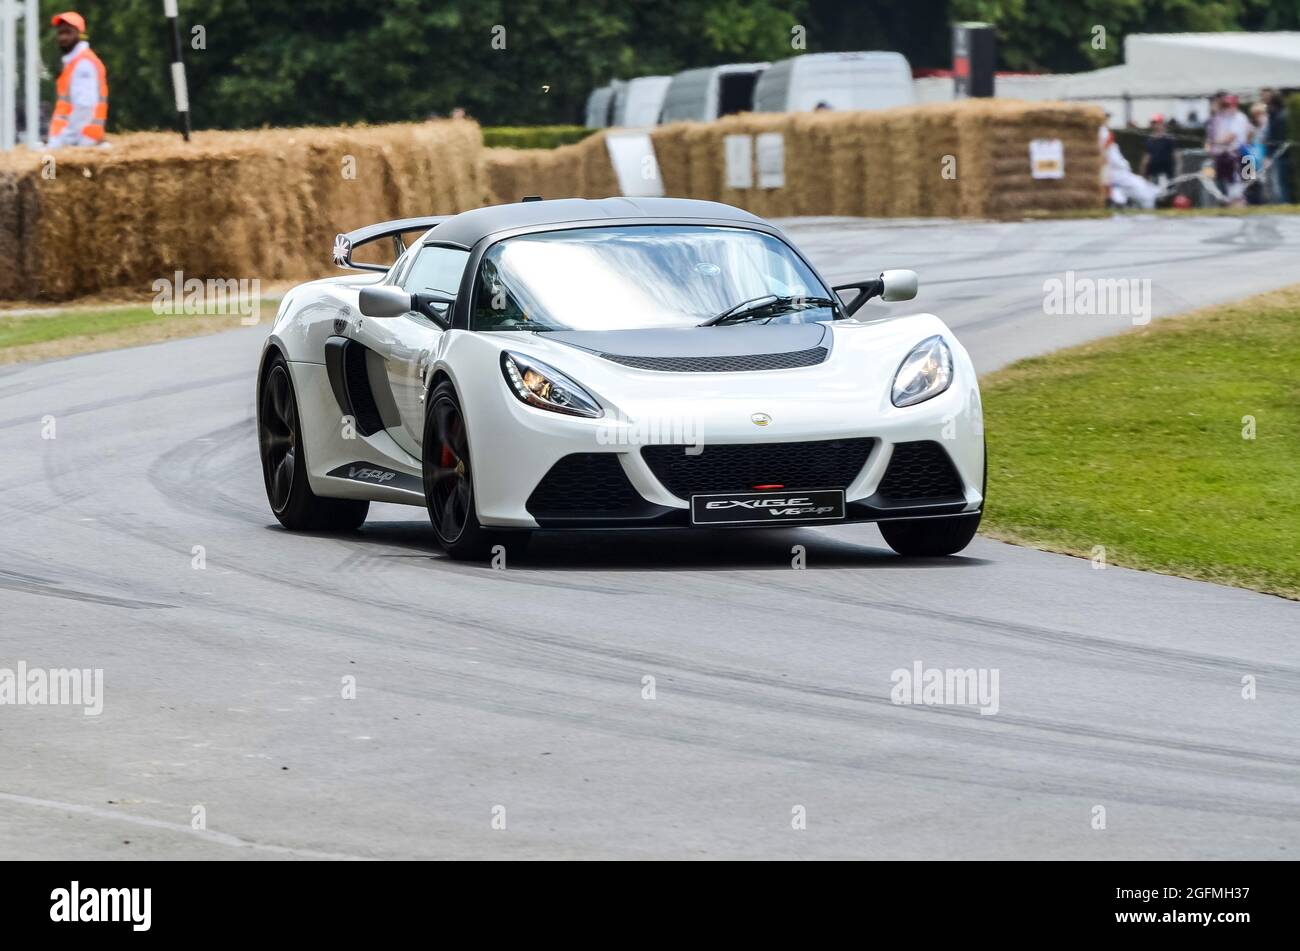 La voiture de course Lotus Exige V6 Cup monte la colline au Goodwood Festival of Speed 2014. Course automobile. Série 3 version orientée vers les chenilles Banque D'Images